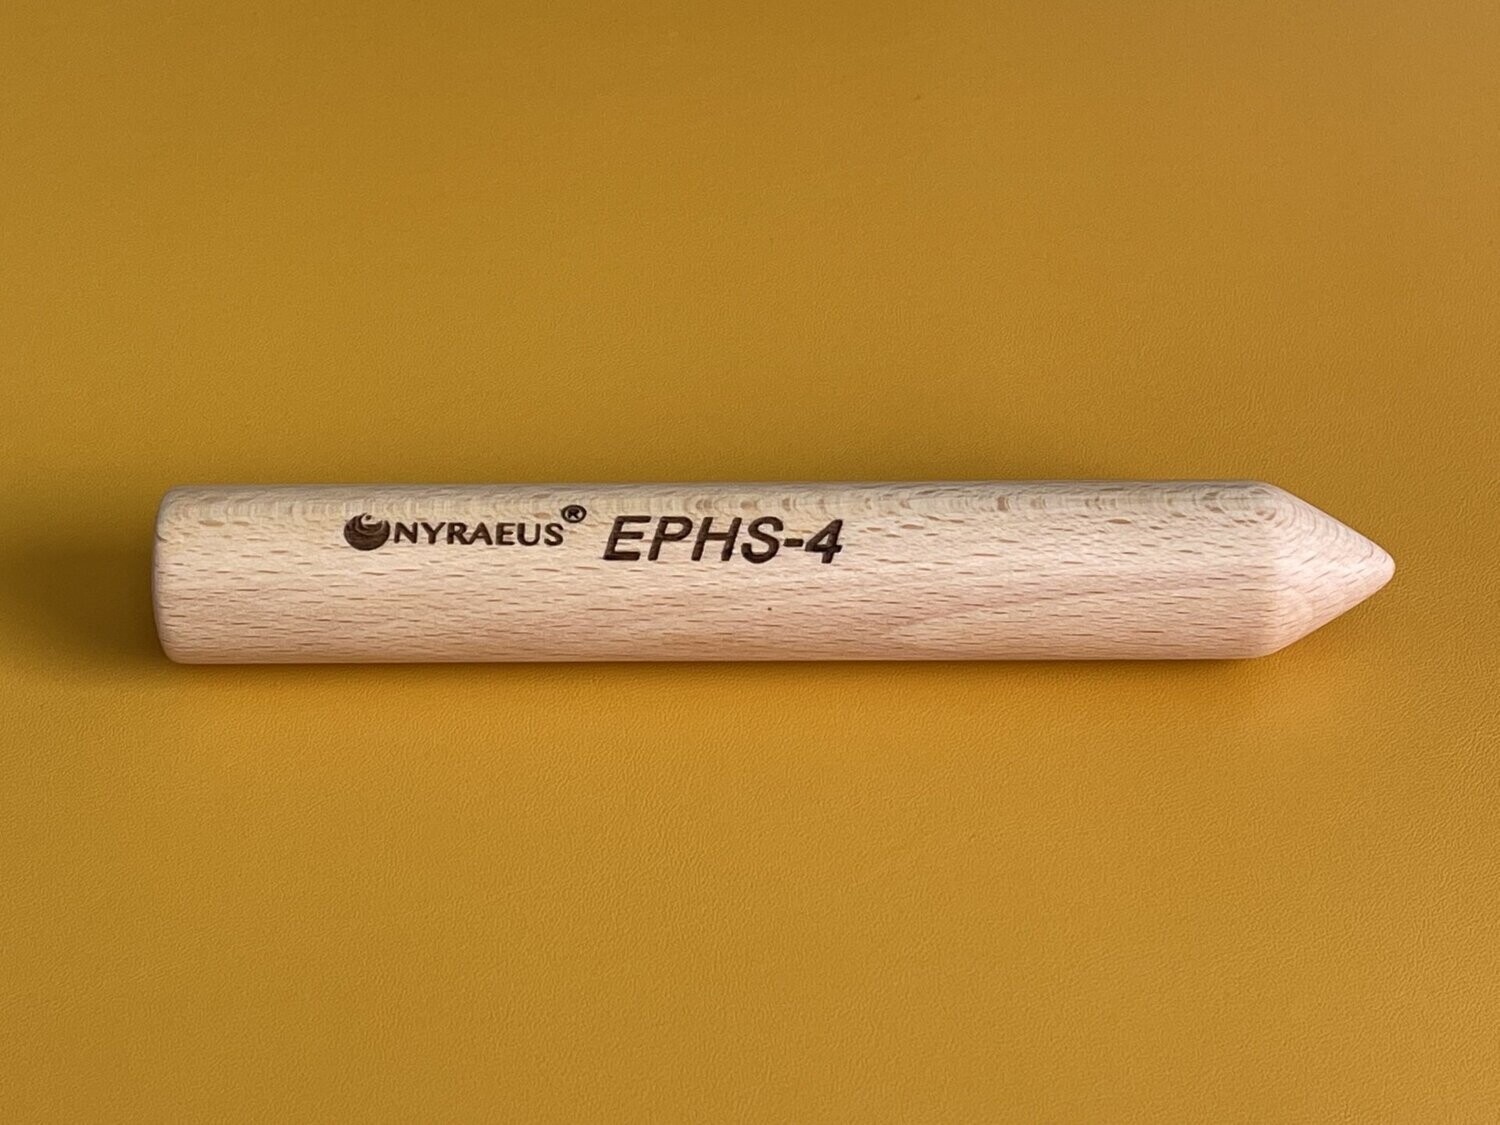 EPHS-4 (Energy-Pen-Health-System)